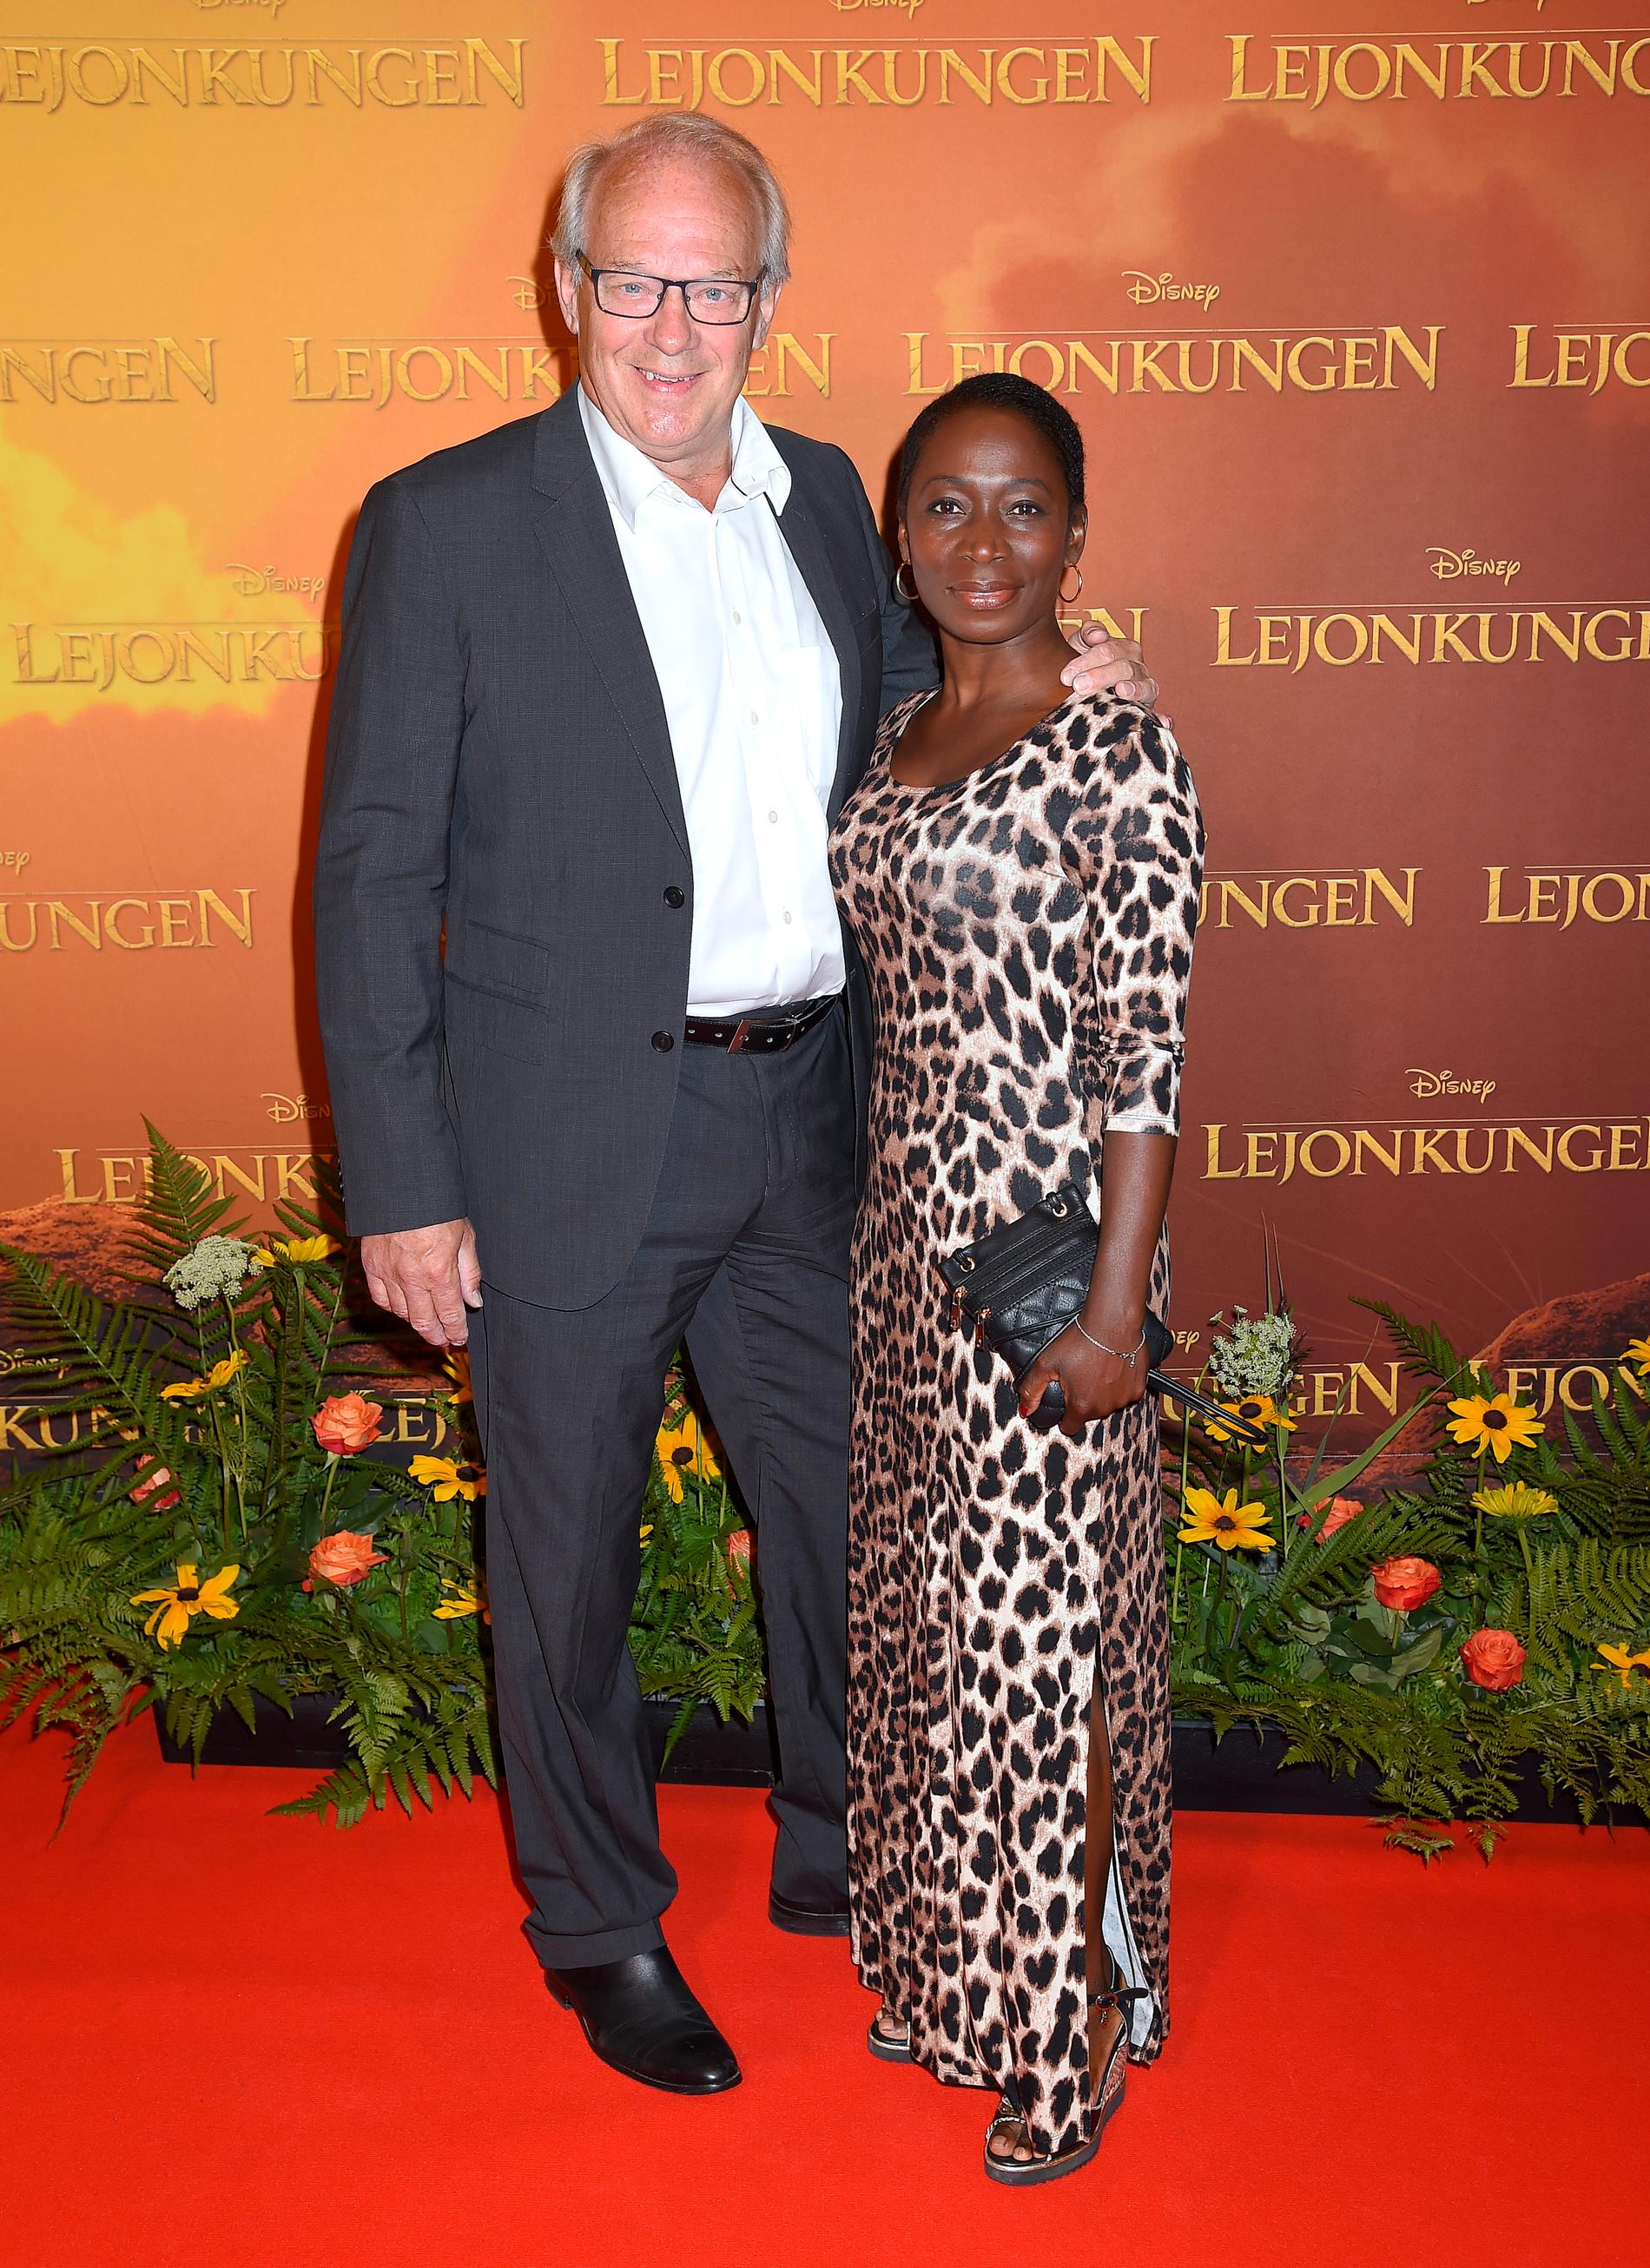 Liberalernas partiledare Nyamko Sabuni och maken Lennart Persson på premiären av ”Lejonkungen”.